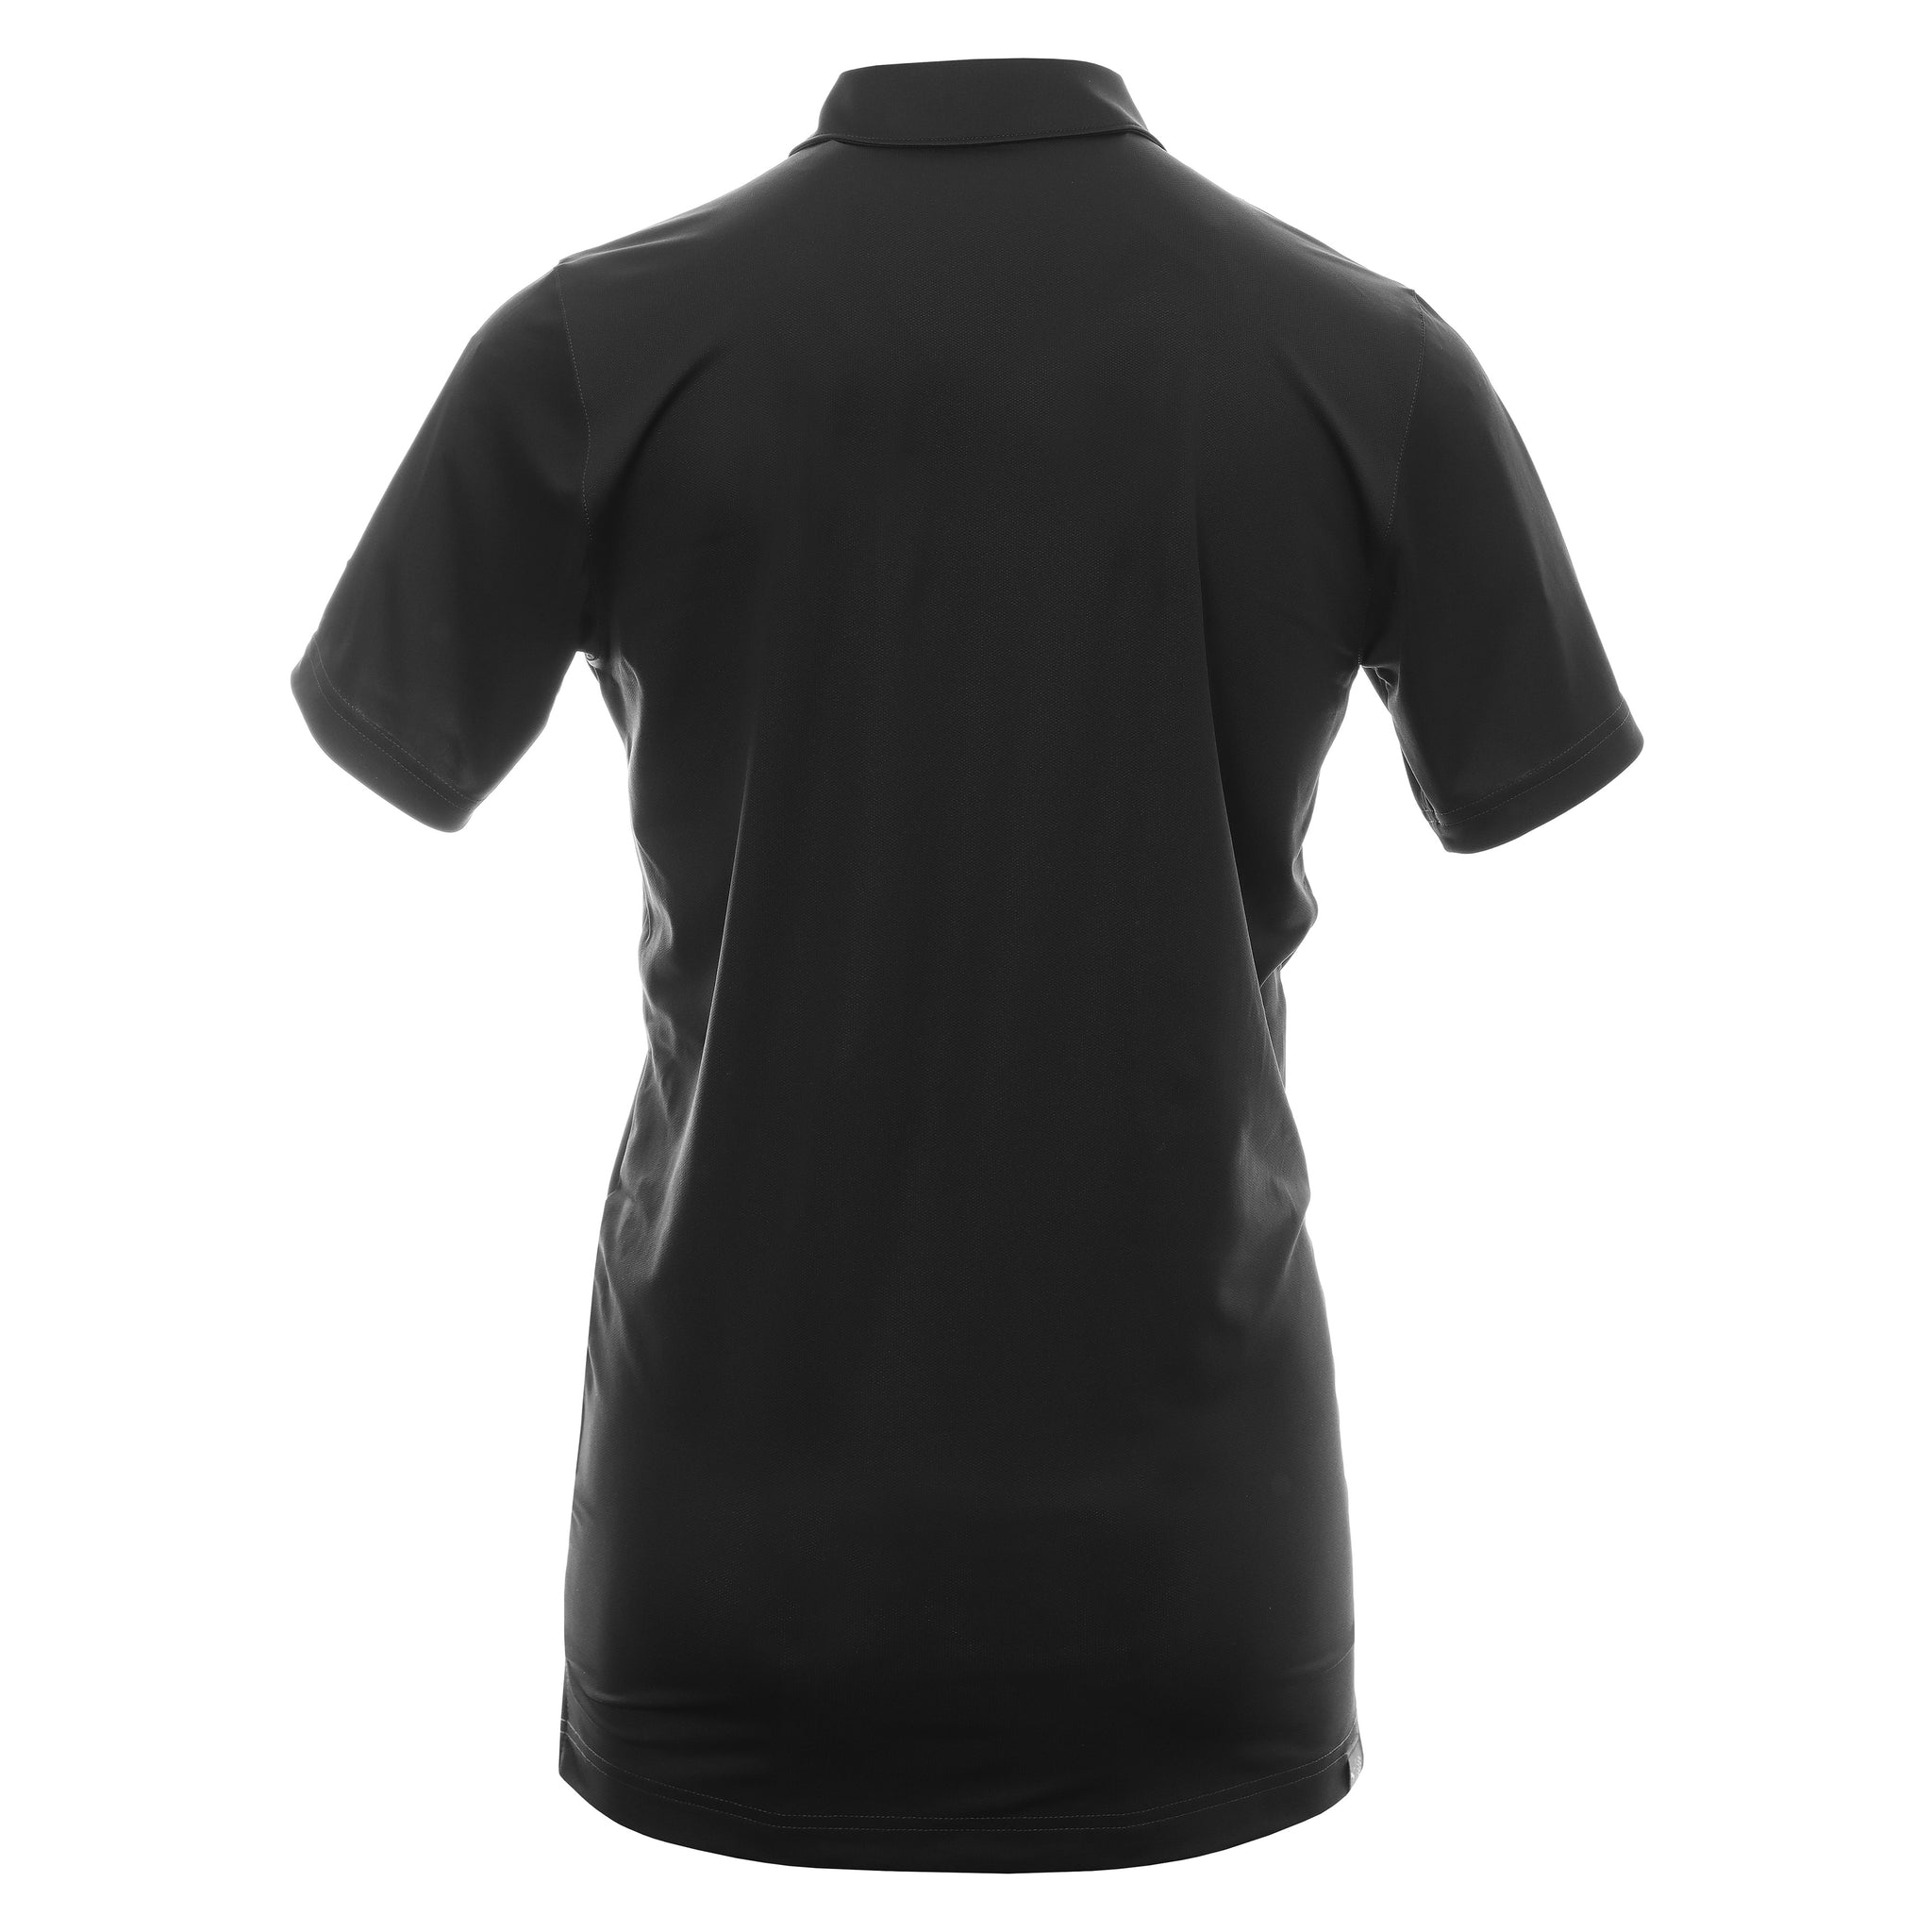 puma-golf-api-collection-gamer-polo-shirt-599120-api-puma-black-02